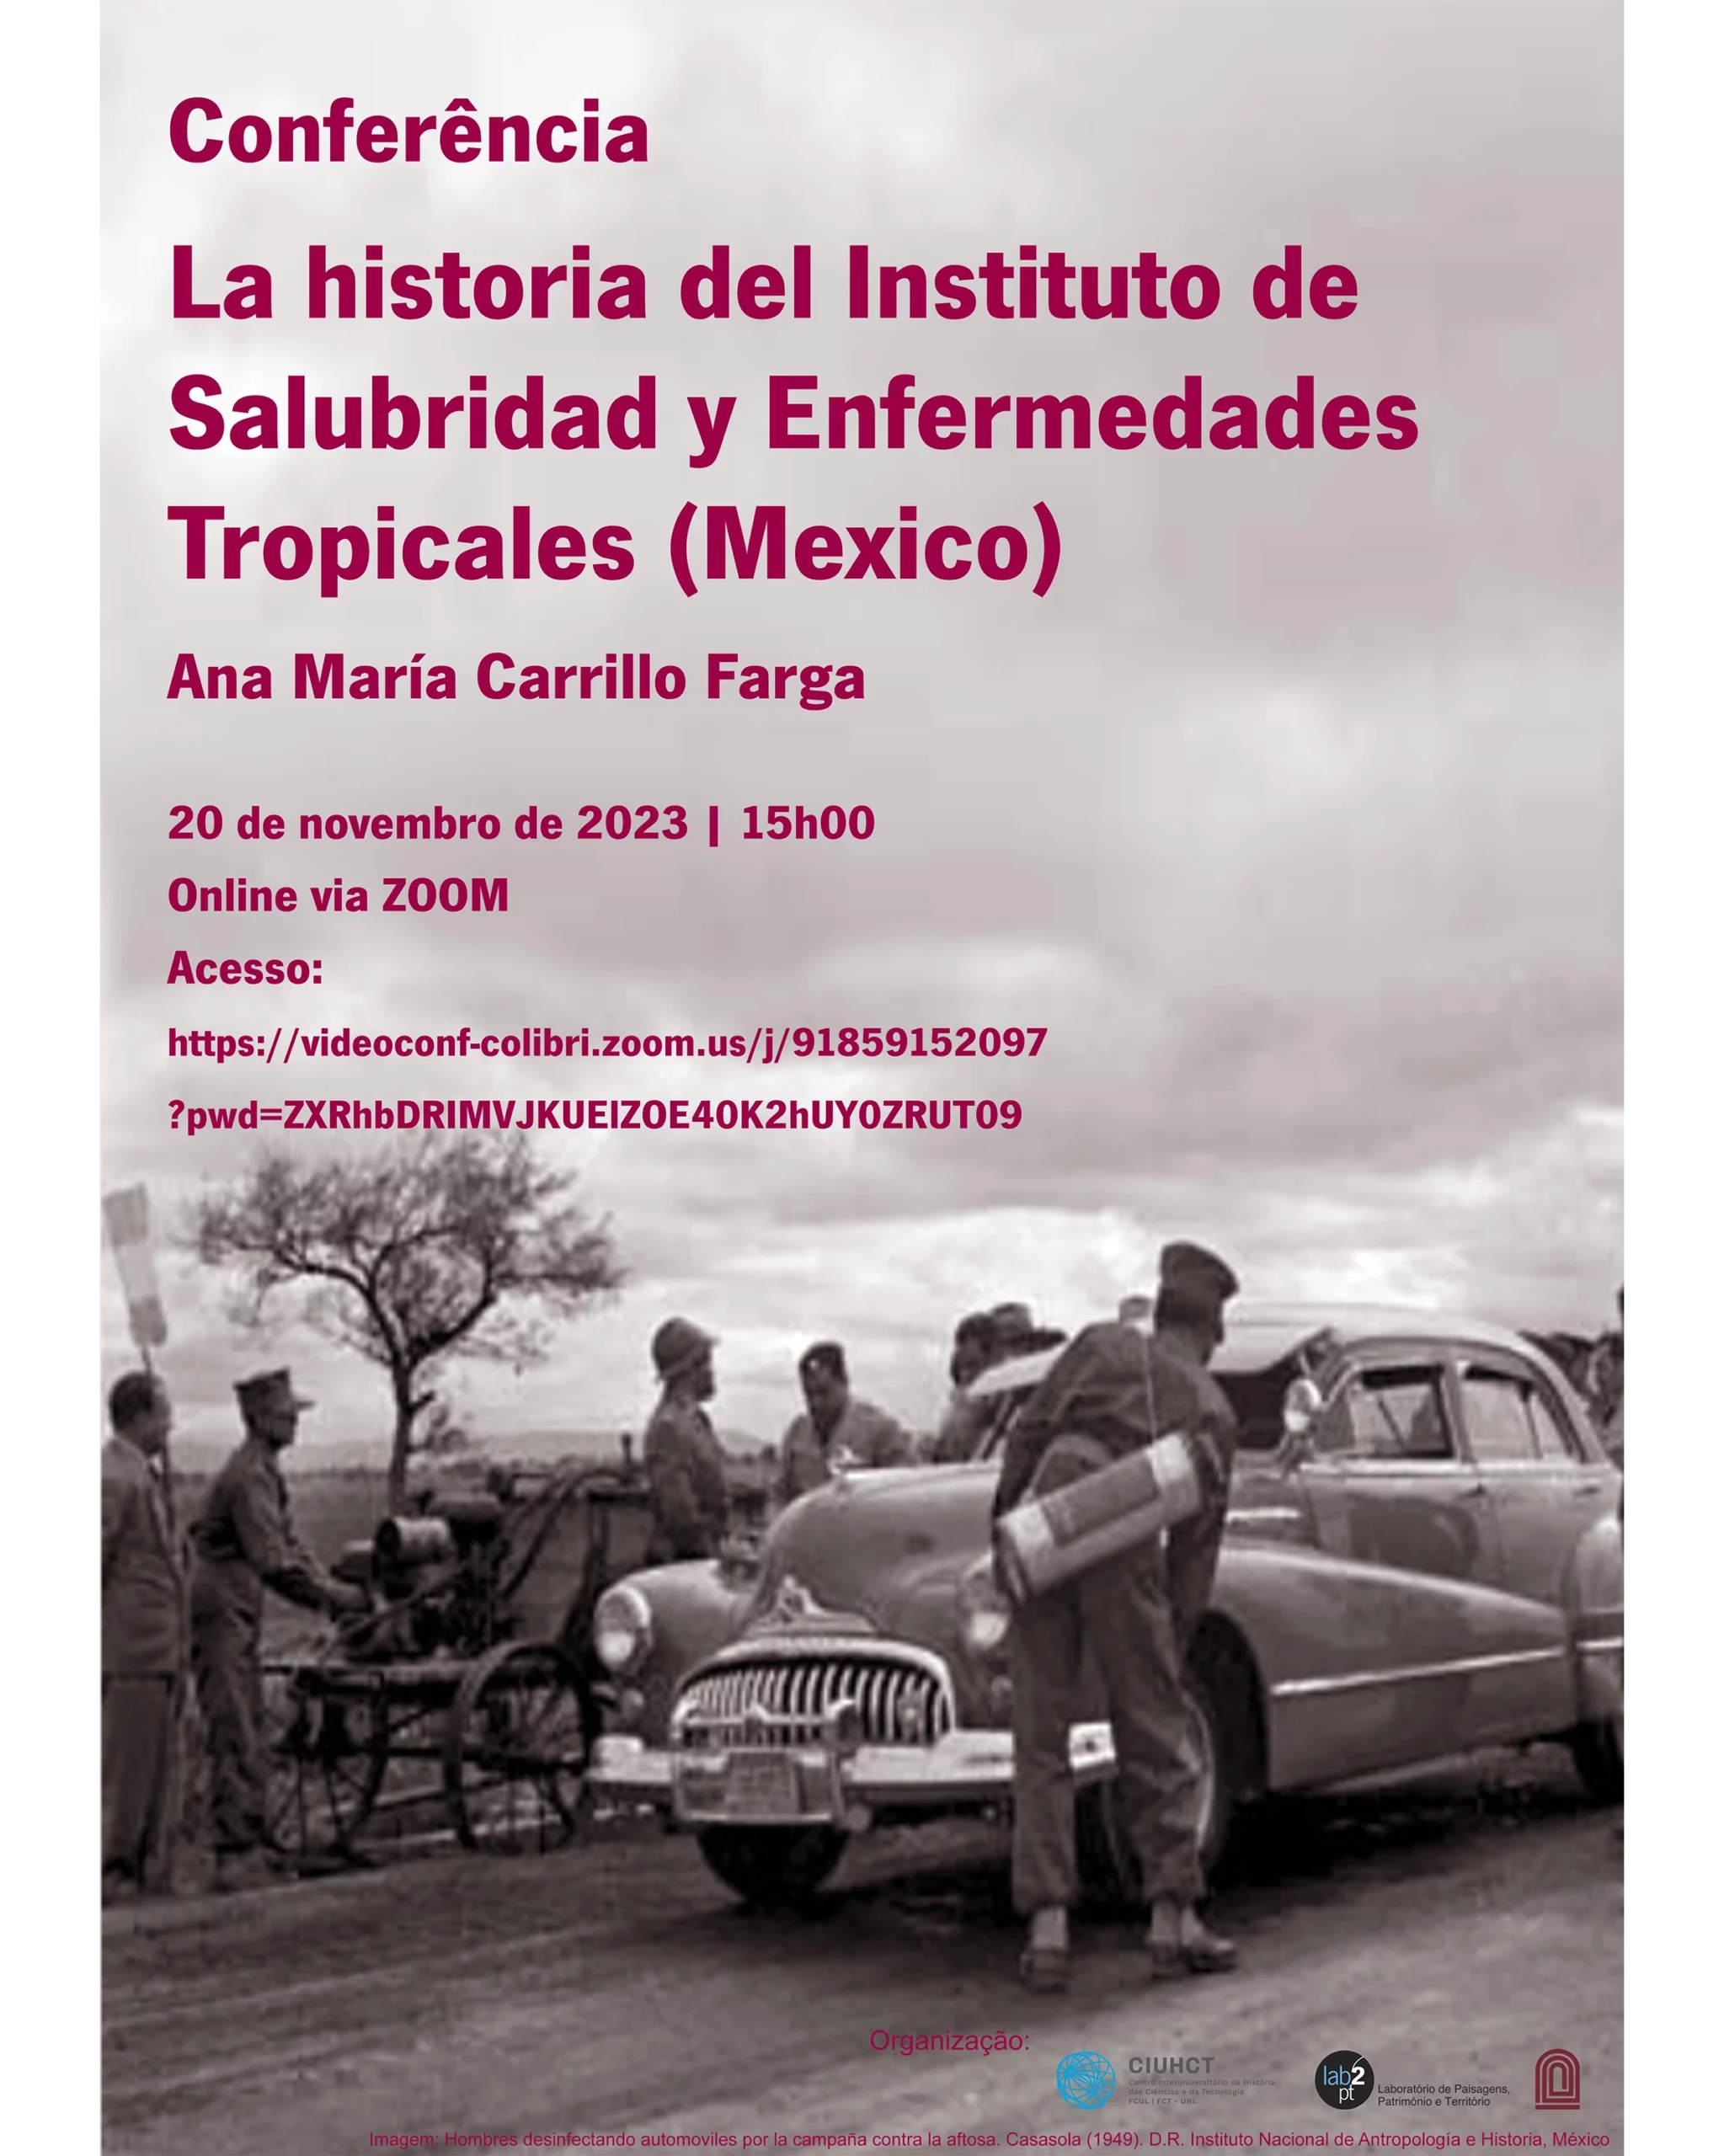 Conferência "La historia del Instituto de Salubridad y Enfermedades Tropicales (Mexico)" image